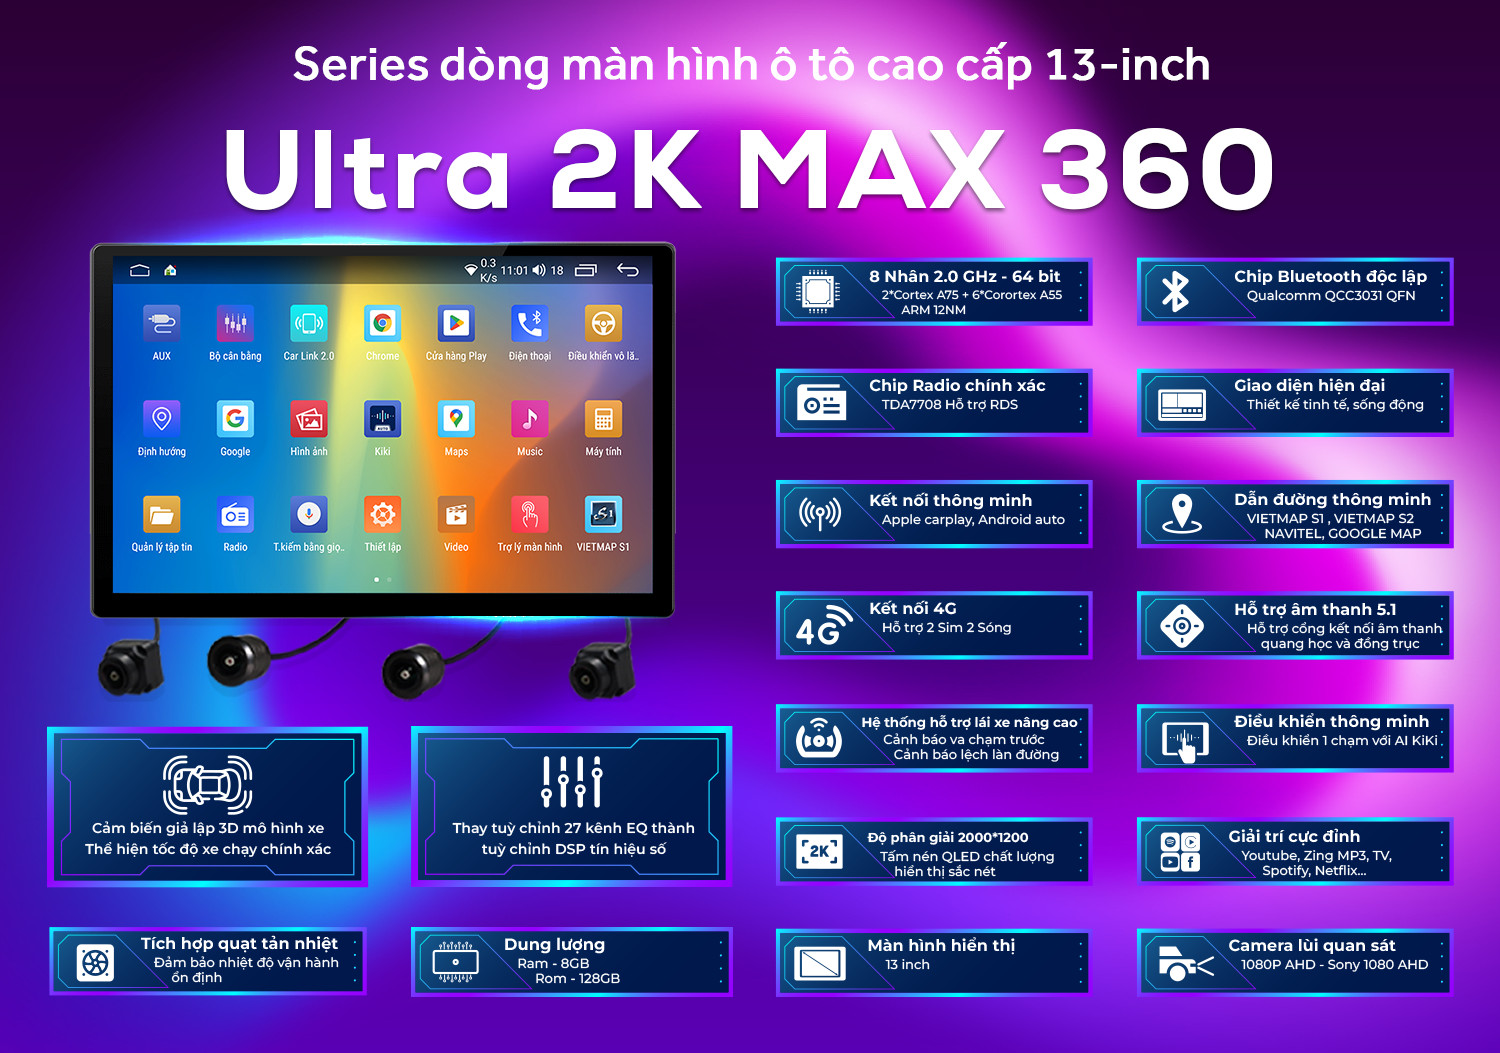 2.4. Màn hình ô tô Ultra 2K Max 360